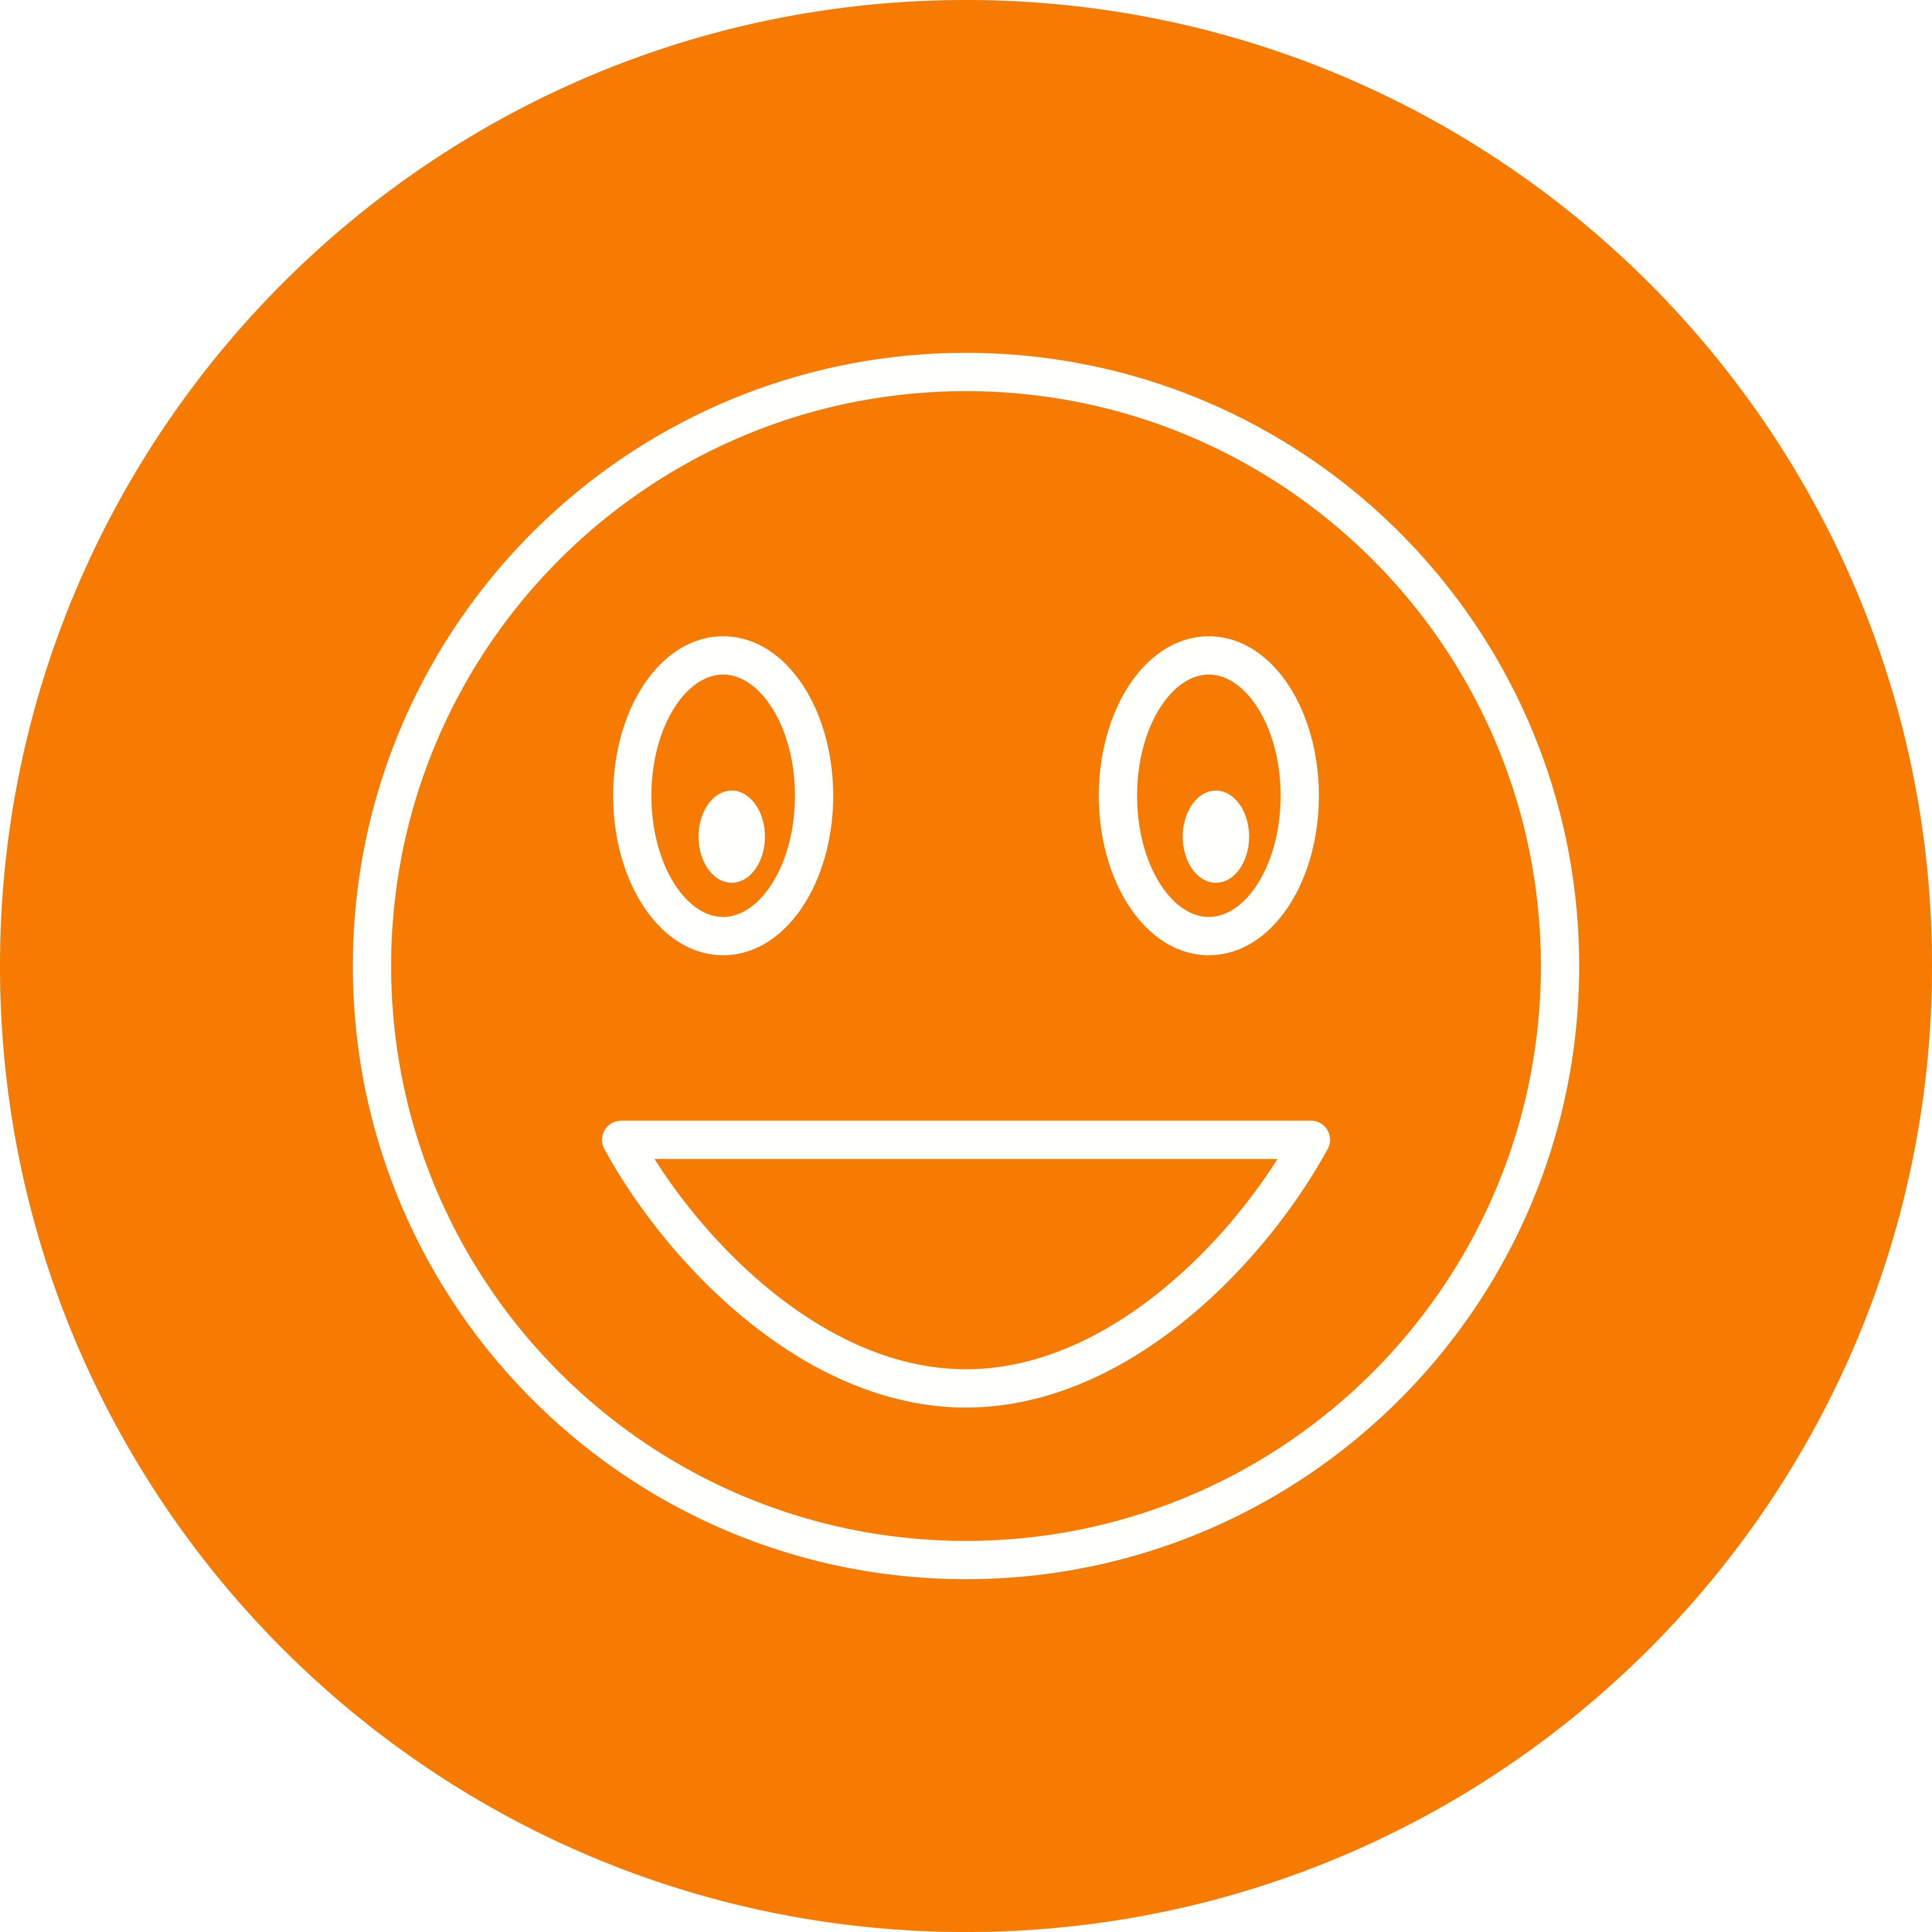 Icona Di Vettore Di Emoji Di Risata Scarica Immagini Vettoriali Gratis Grafica Vettoriale E Disegno Modelli